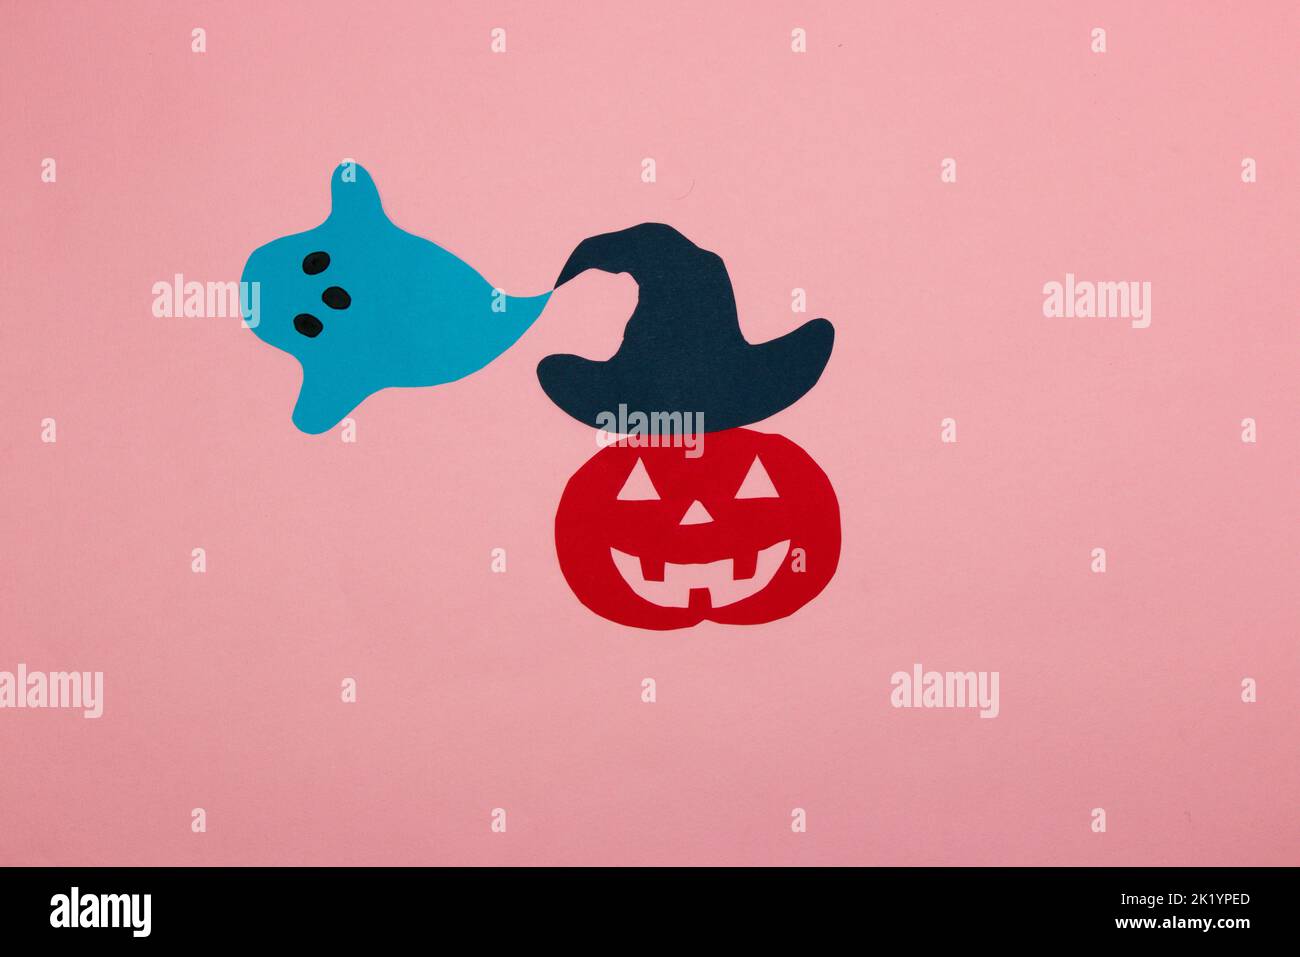 zucca di carta rossa con un cappello blu da cui esce il fantasma, concetto creativo di halloween, posa piatta, carta artigianale Foto Stock